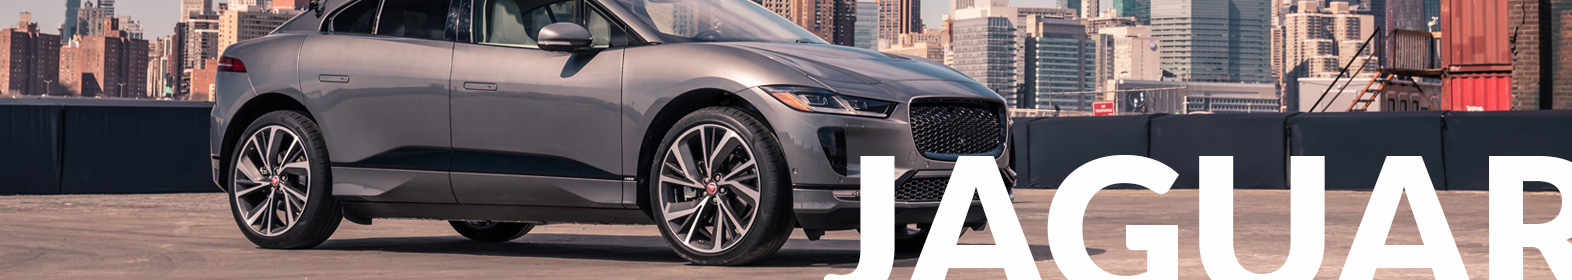 Jaguar Banner | Yates Collision